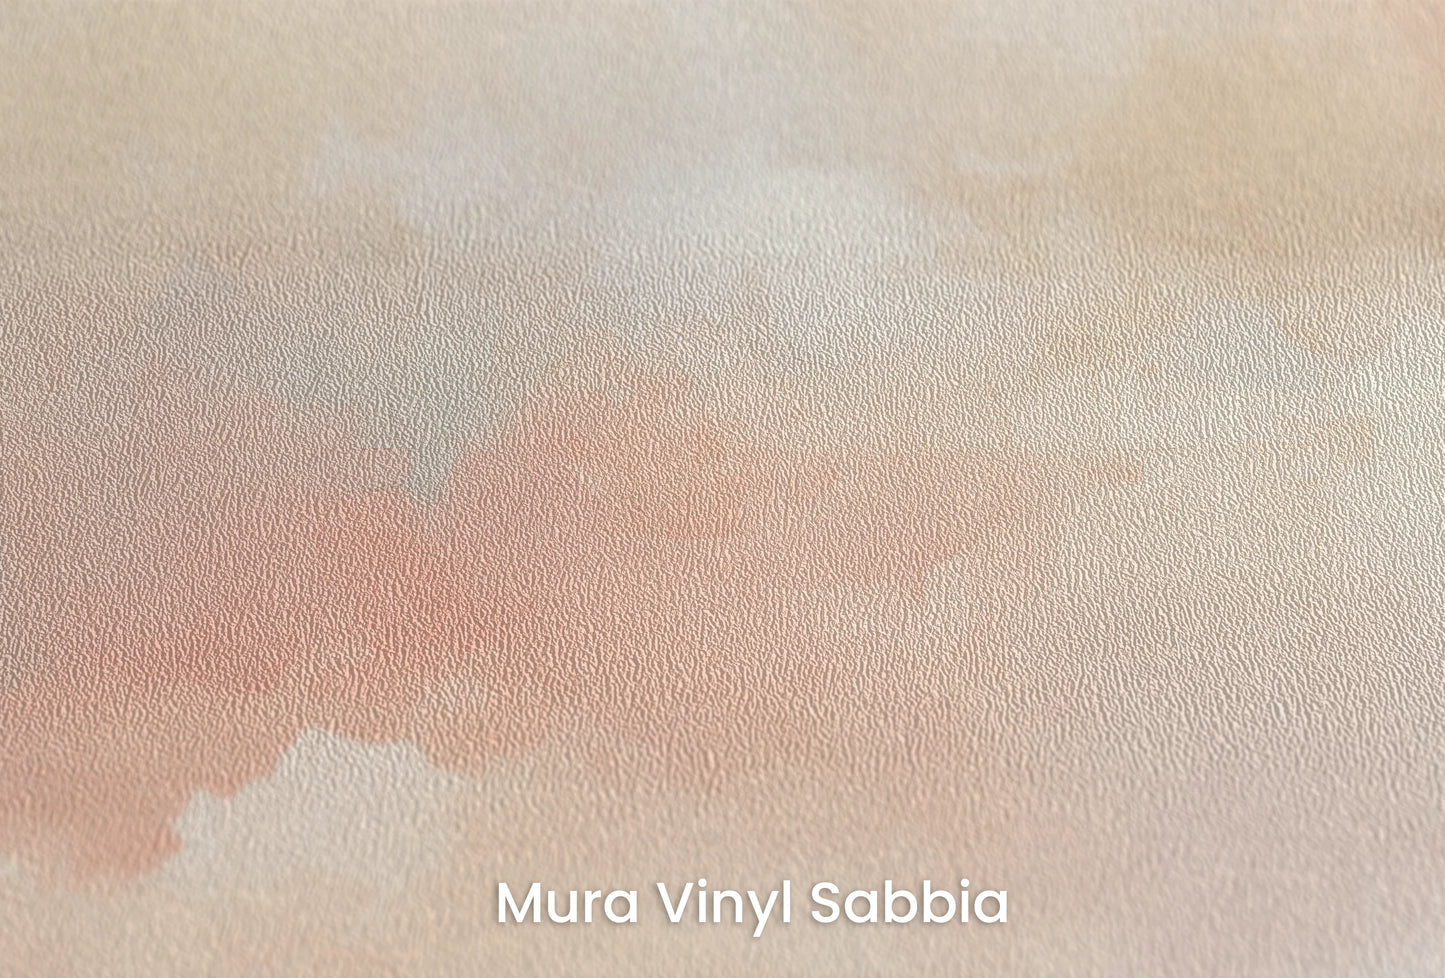 Zbliżenie na artystyczną fototapetę o nazwie Cotton Skies na podłożu Mura Vinyl Sabbia struktura grubego ziarna piasku.